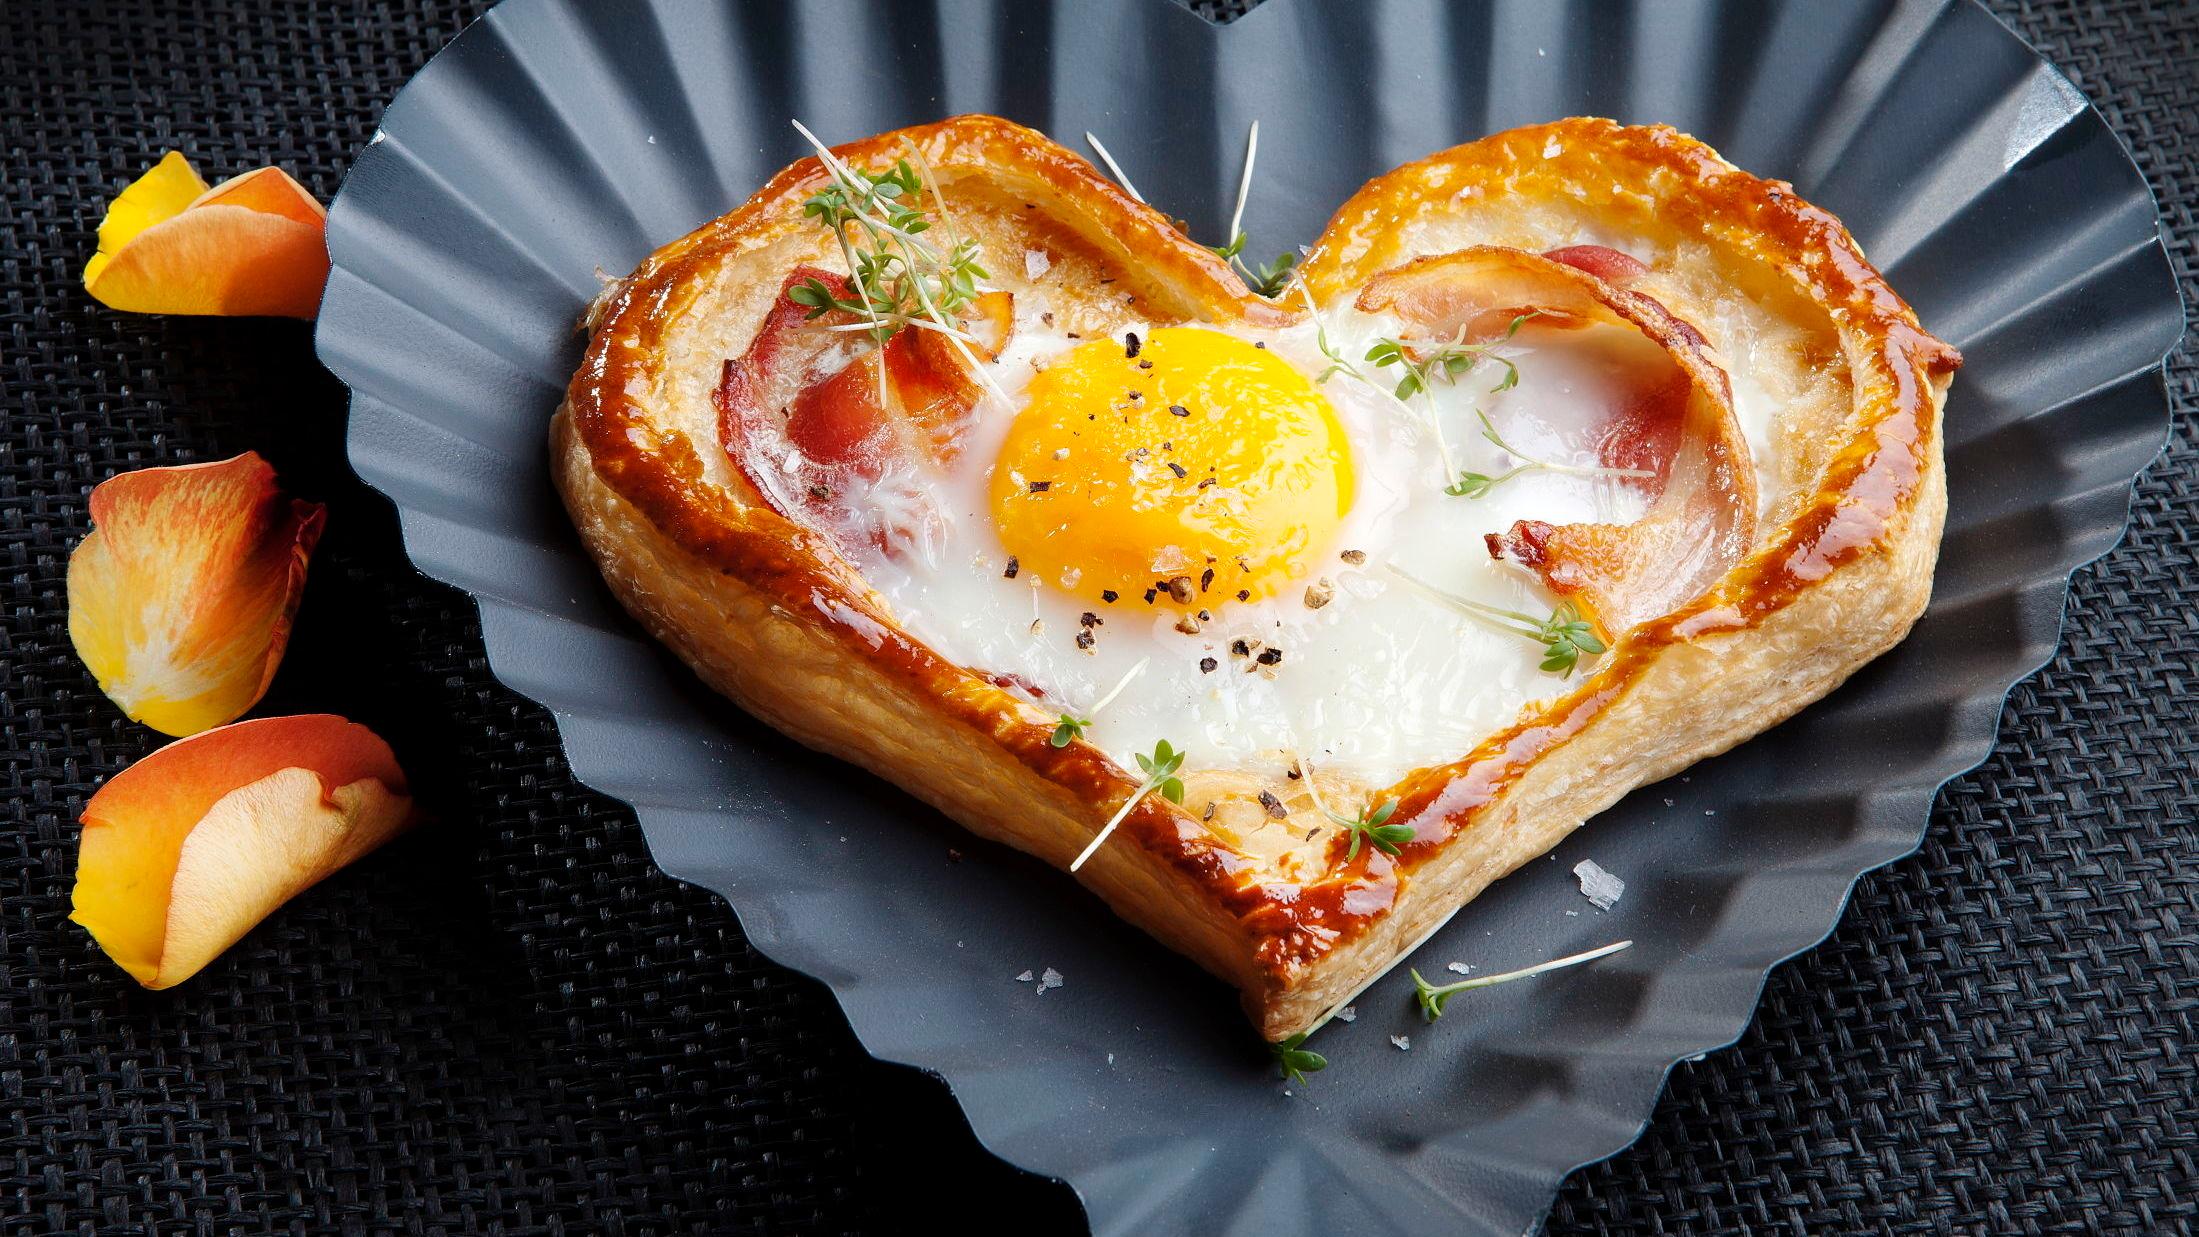 HJERTEFROKOST: Egg og Bacon servert i et tertehjerte gir en god start på dagen. Foto: Magnar Kirknes / VG.